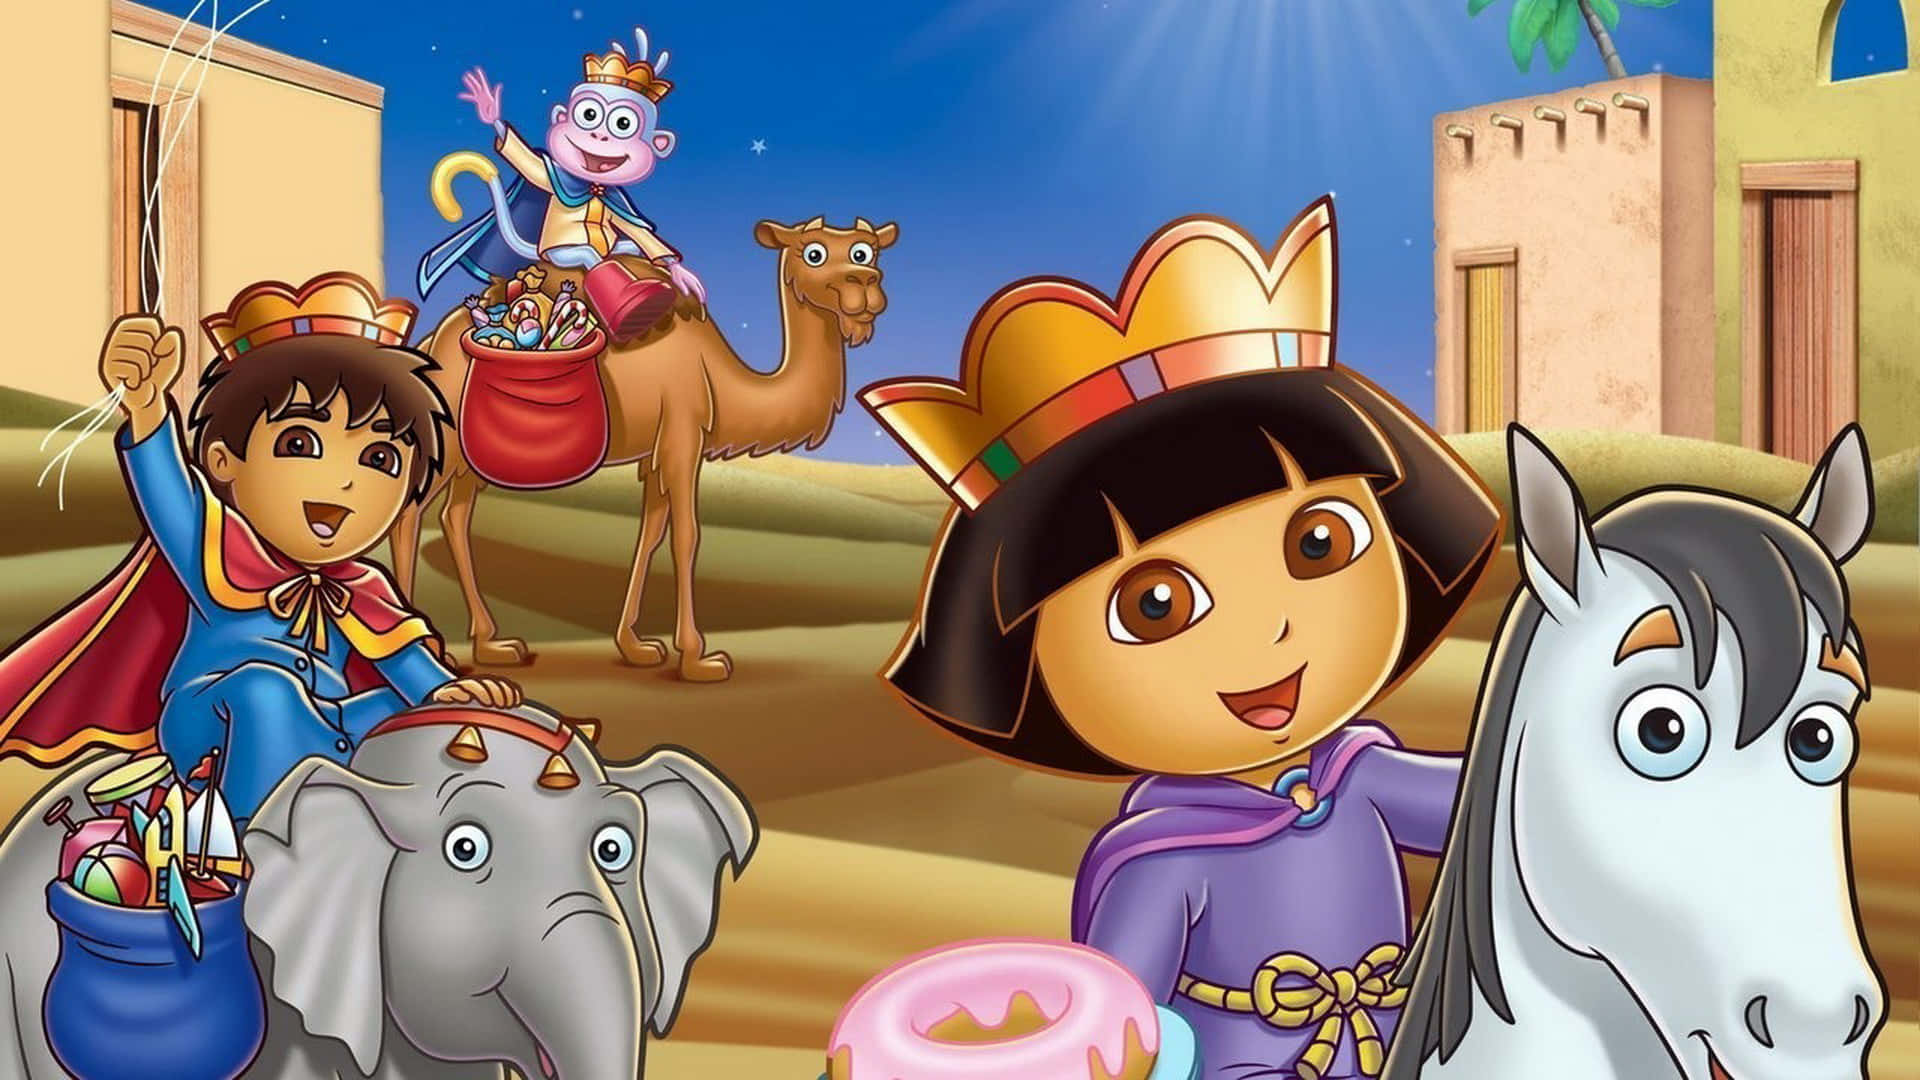 Explore the magical world of Dora the Explorer